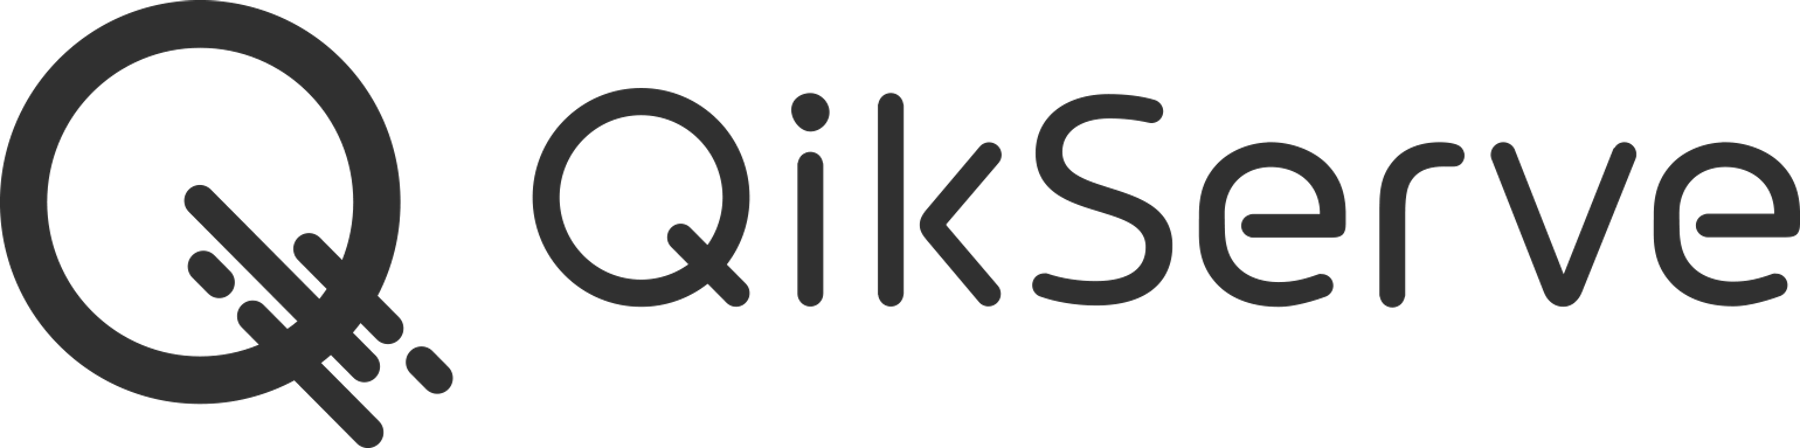 Quickserve logo black png